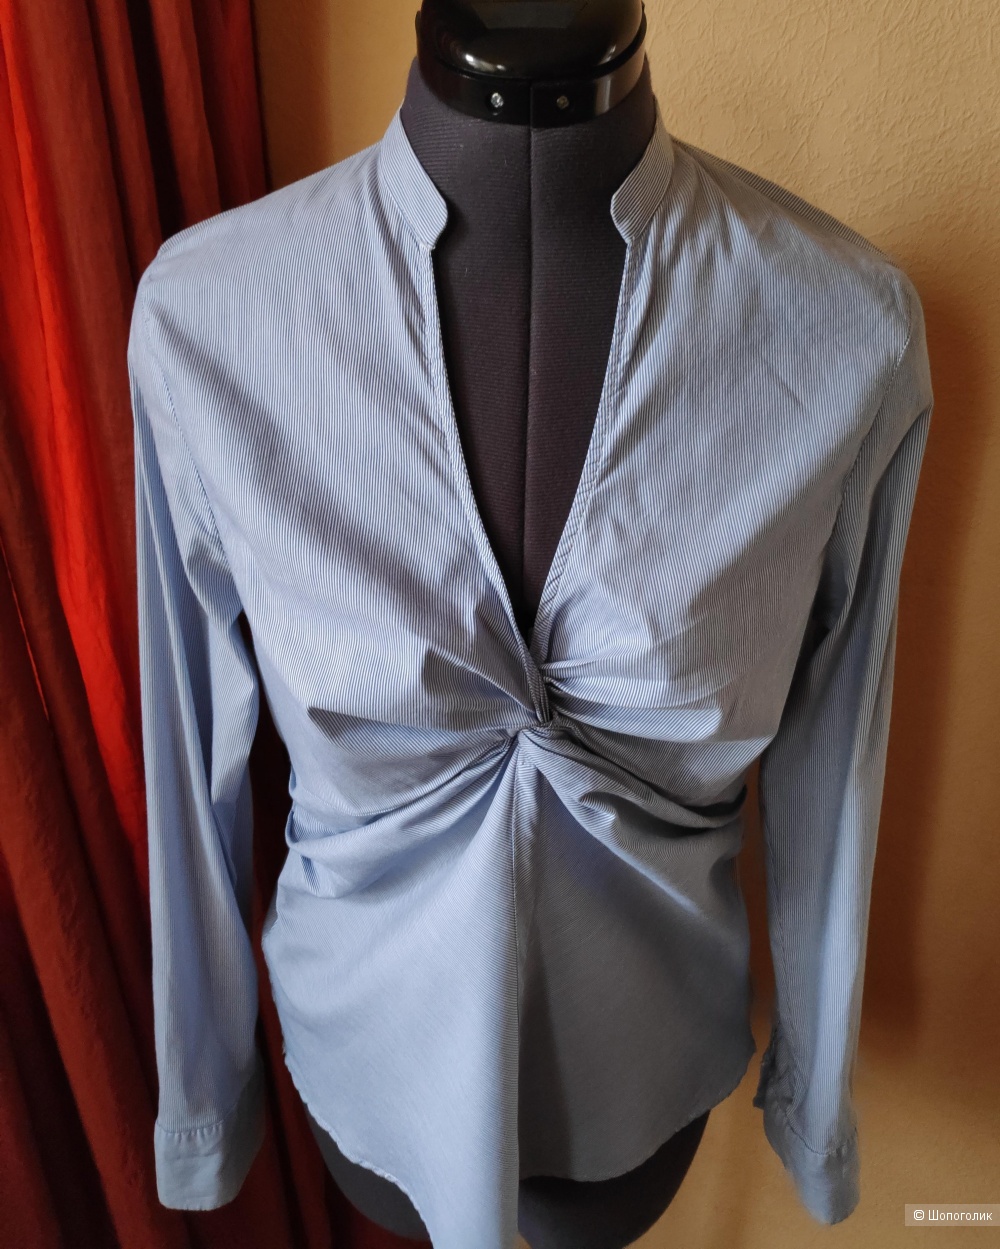 Блузка рубашка ZARA woman, маркировка L.